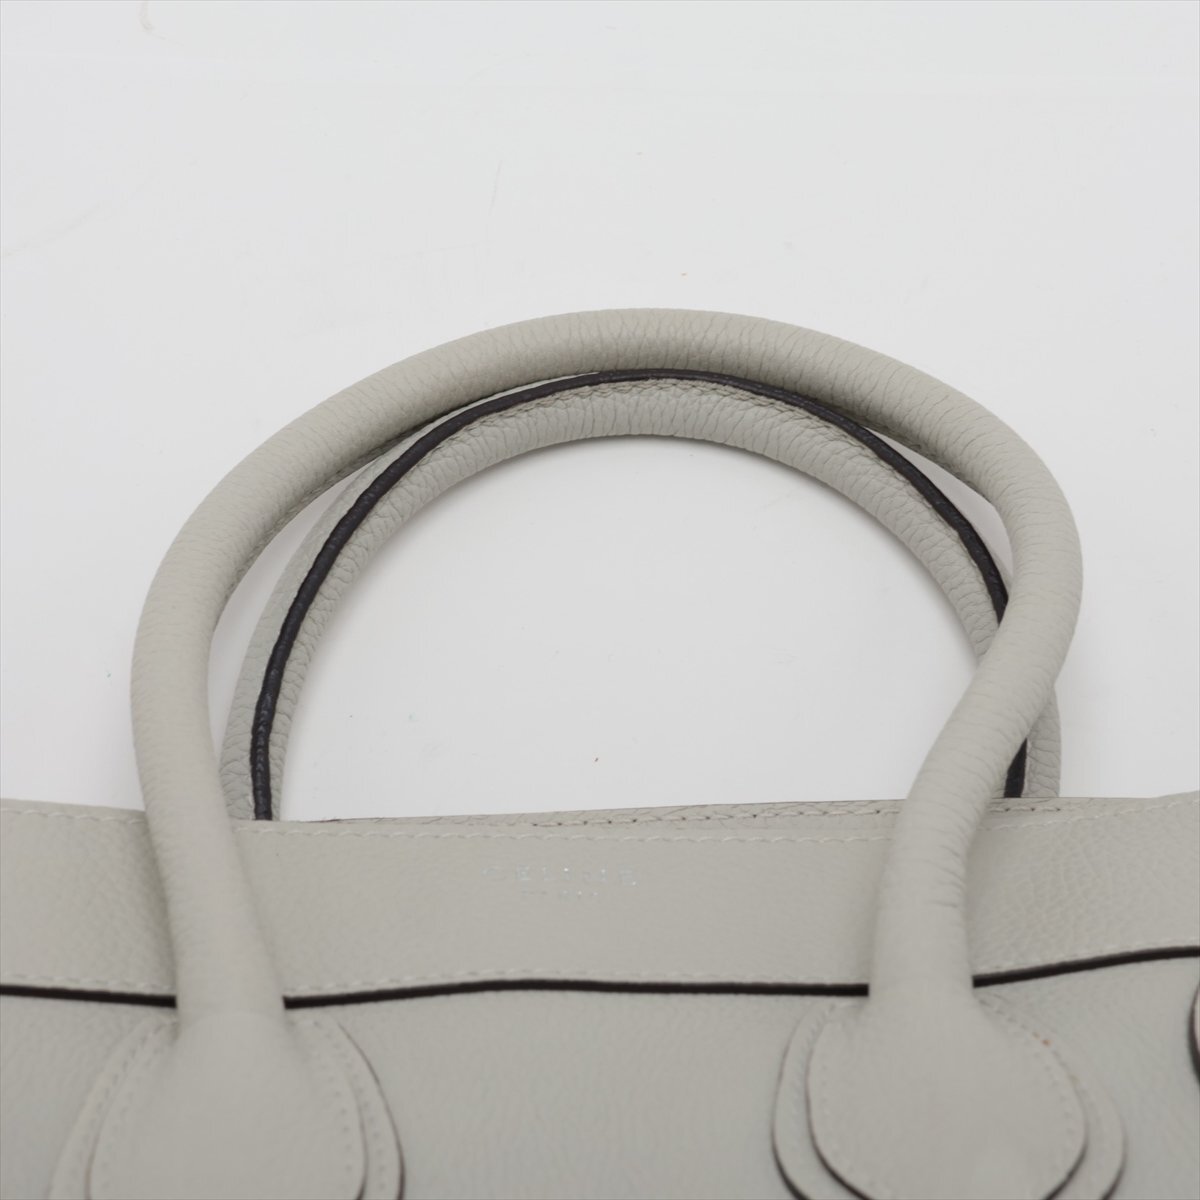 1 иен # превосходный товар # Celine # багажный микро shopa- кожа большая сумка плечо рука серый натуральная кожа женский EEM V46-3